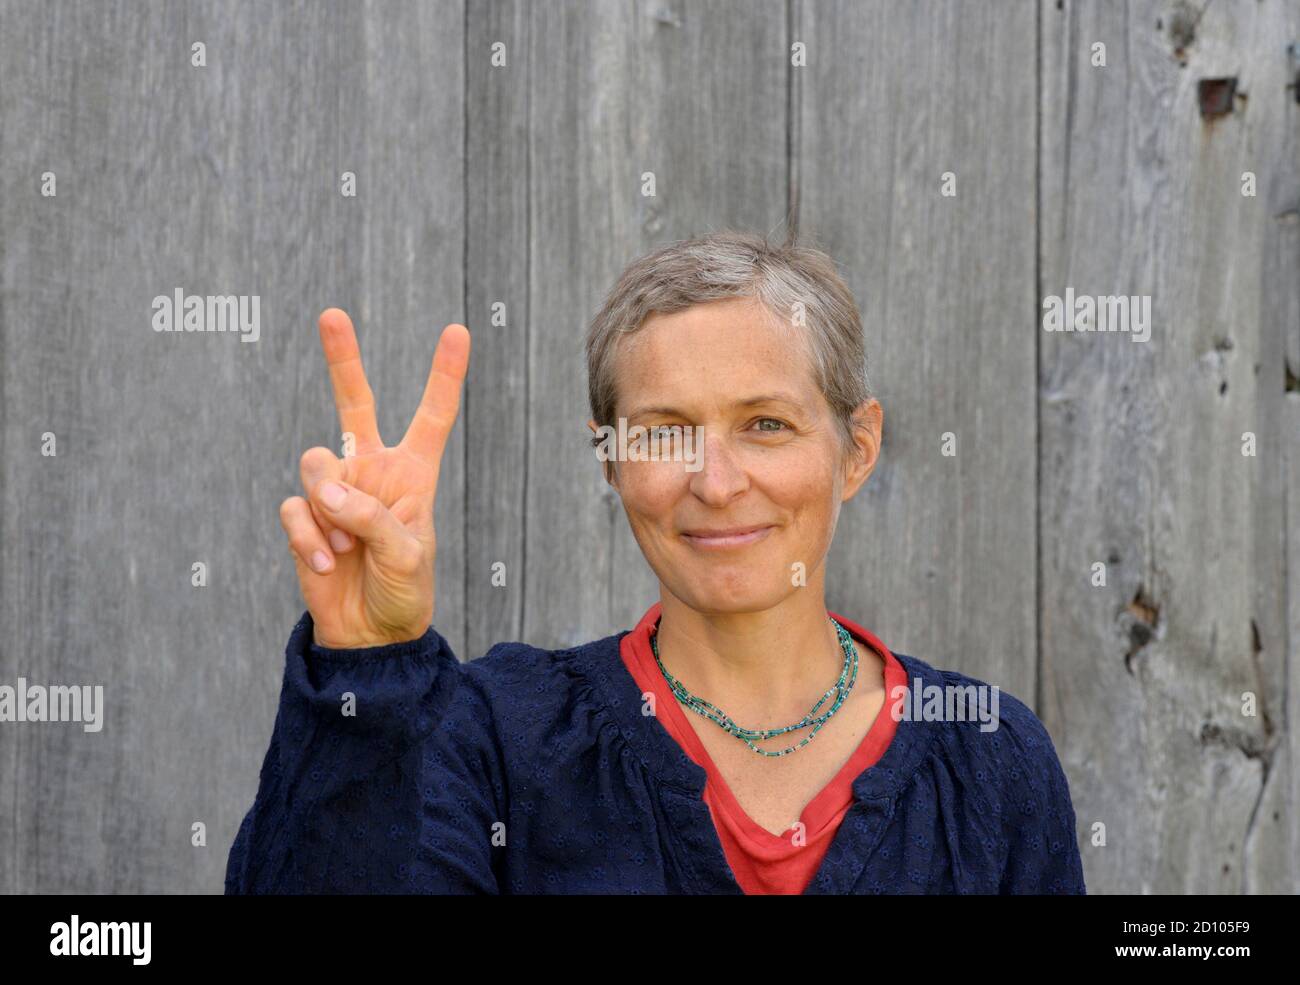 Erfolgreiche kaukasische Landfrau mittleren Alters mit kurzen Haaren zeigt das V-Zeichen (Sieg) mit der rechten Hand, vor altem Scheunenholzhintergrund. Stockfoto